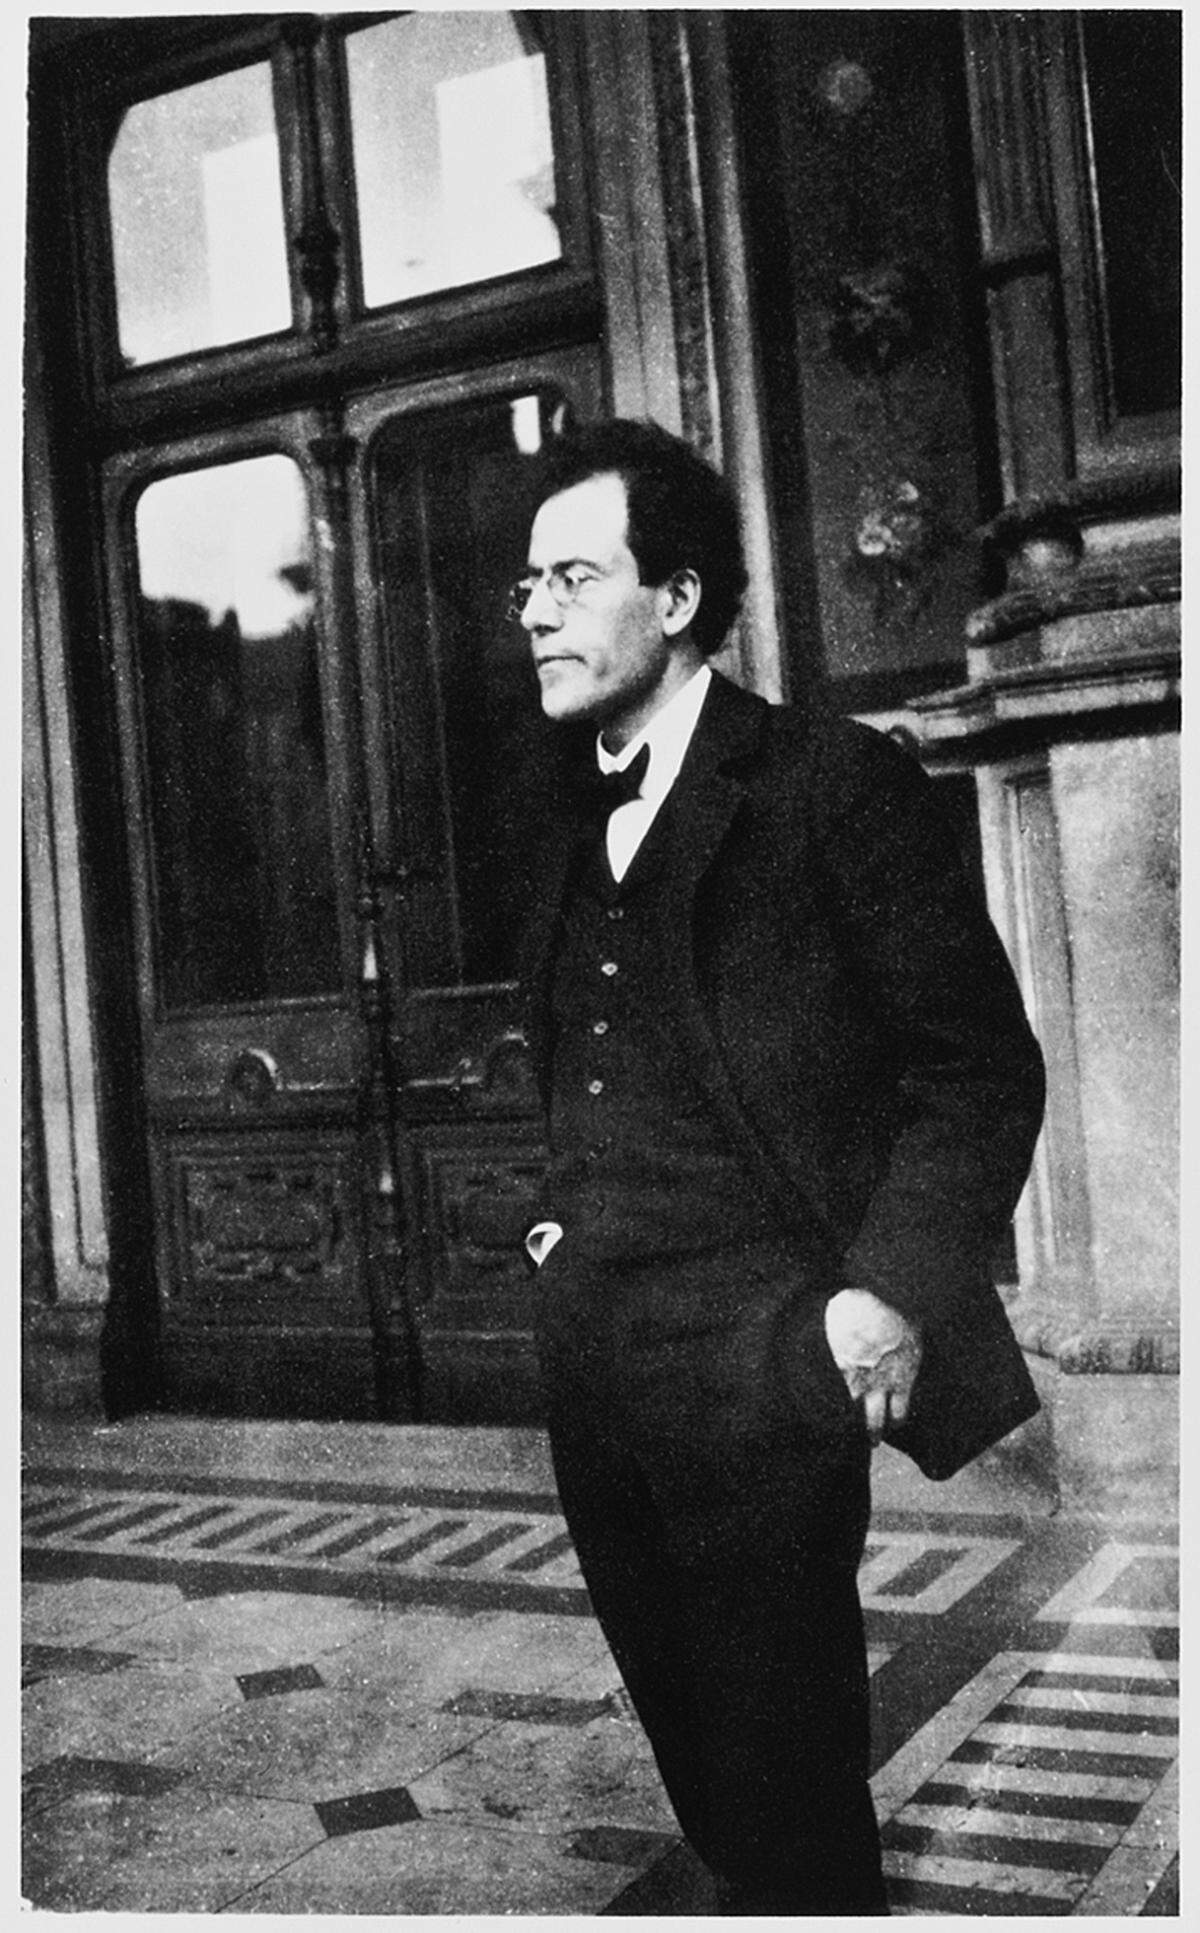 "Die Zeit für meine Musik wird noch kommen", war Gustav Mahler überzeugt. Zu seinen Lebzeiten wurde er als Dirigent und Operndirektor gefeiert, als Komponist blieb er allerdings umstritten. Am Mittwoch, dem 18. Mai, jährt sich sein Mahlers Todestag zum 100. Mal. Die Staatsoper zeigt im Gustav Mahler-Saal in der Ausstellung "Mahler Album" alle existierenden Fotos des Komponisten - sie zeigen Mahler abseits der bekannten Bilder. Mahler als beim Wandern, beim Überschreiten der Straße, in den Ferien und wie er sich den Weg zeigen lässt.  Alle Bilder aus der Ausstellung "Mahler Album" (c) Kaplan Foundation Collection, New York